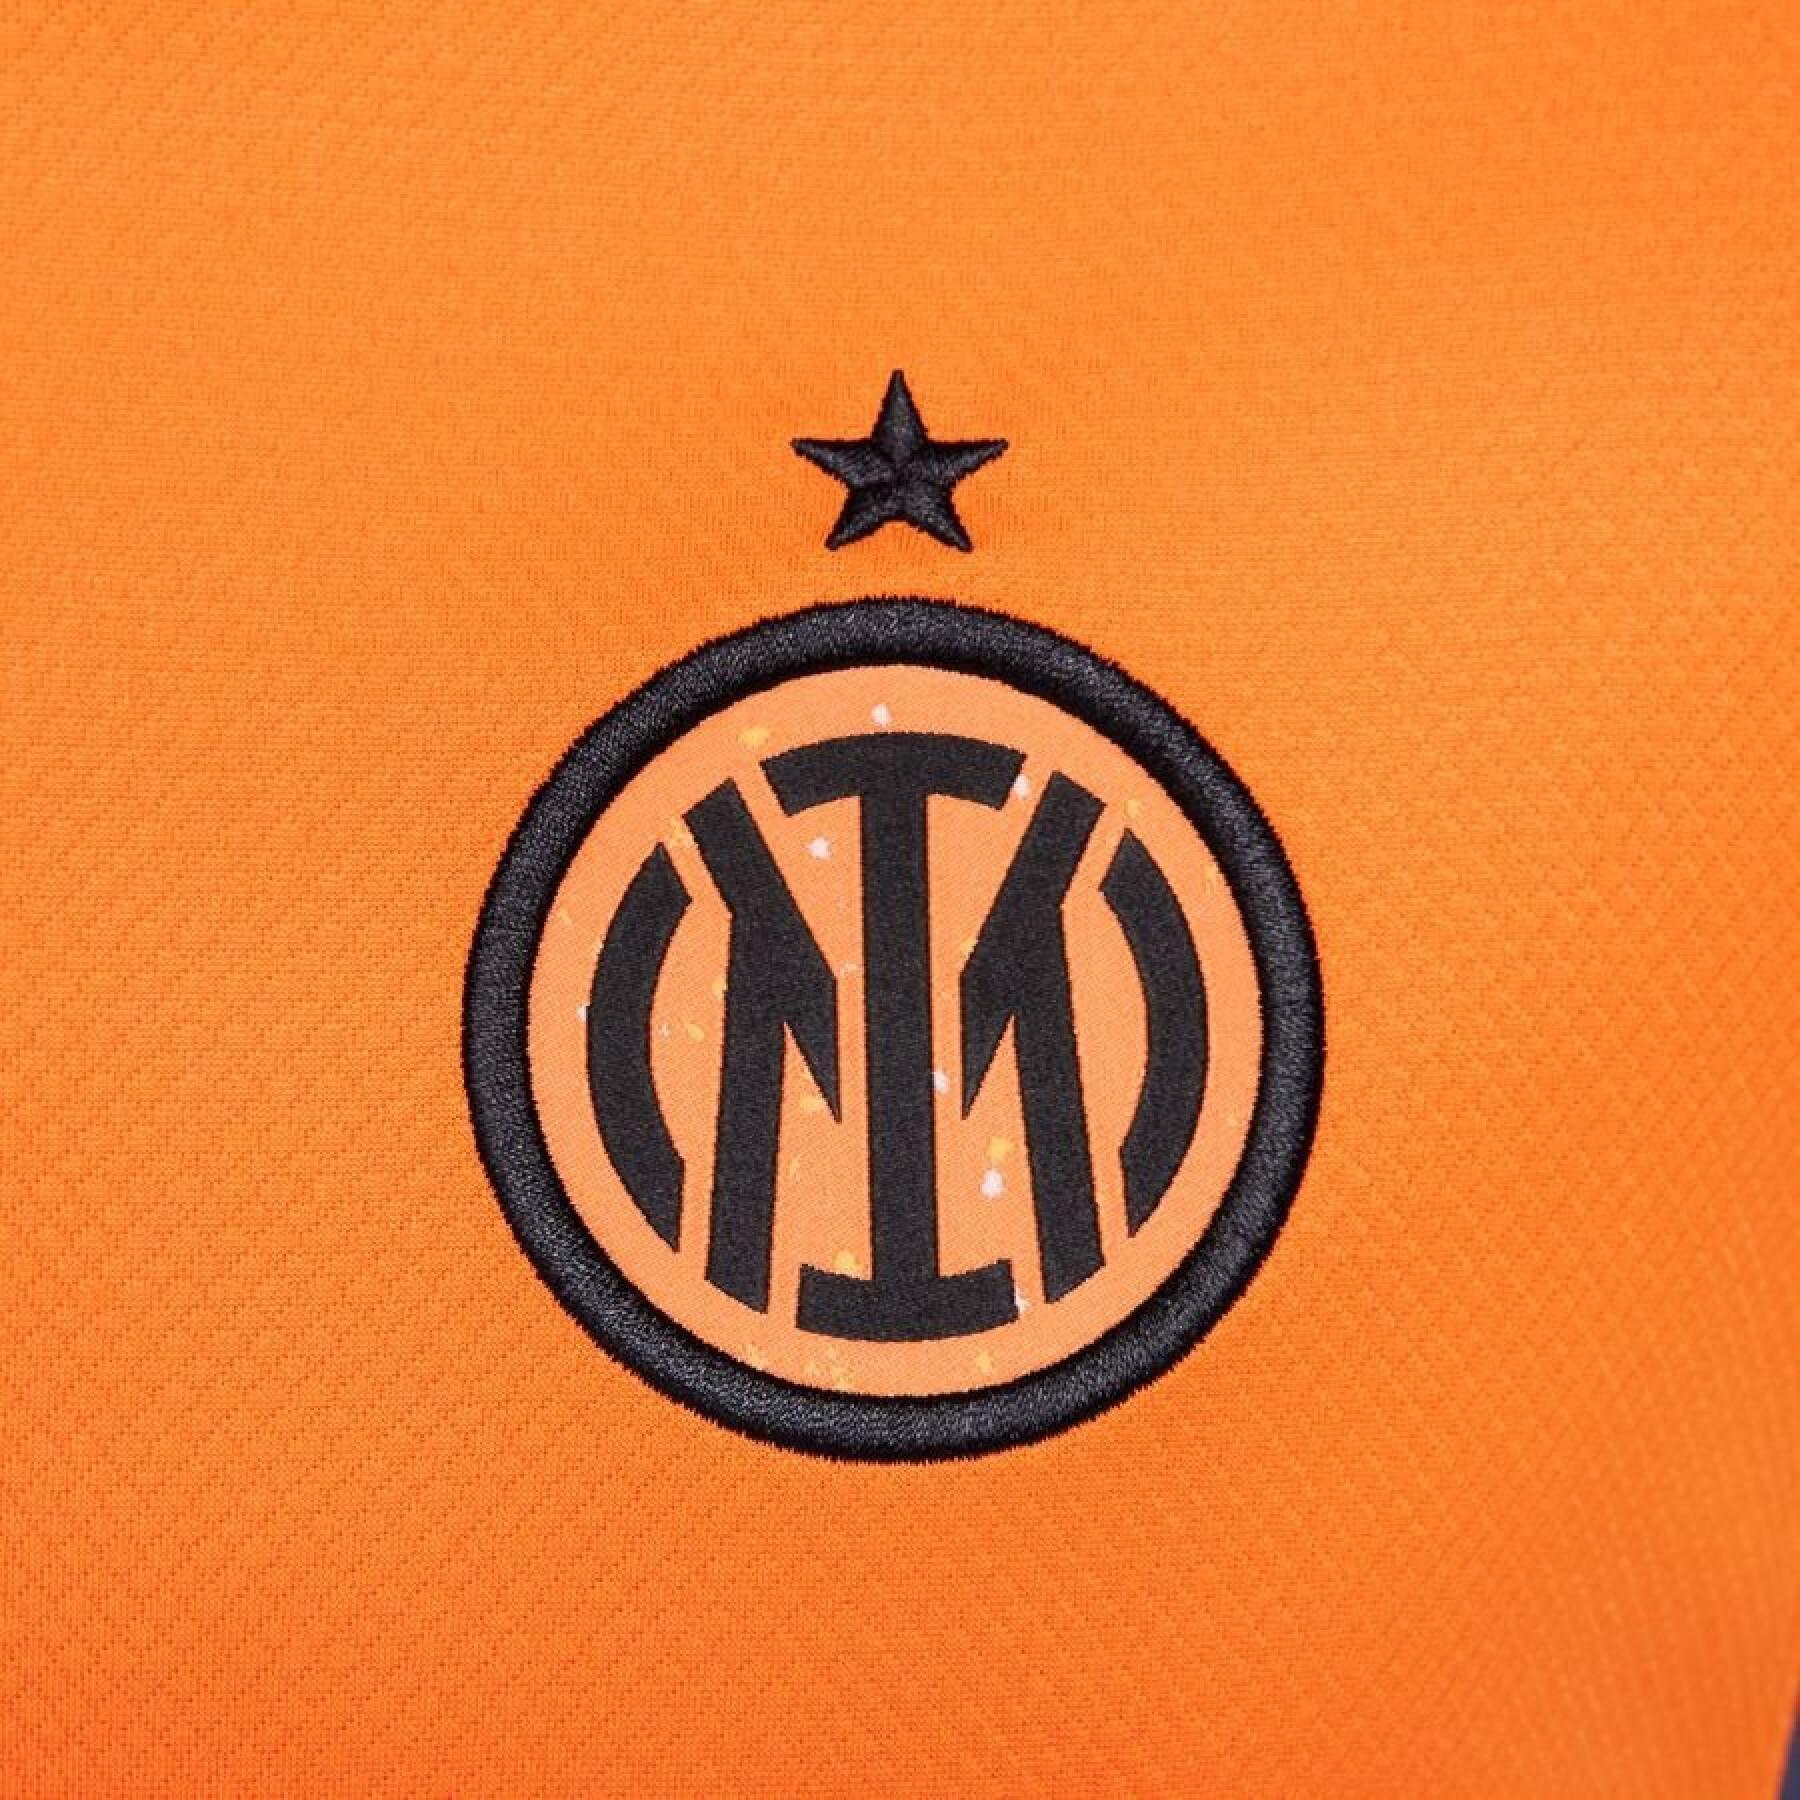 Camiseta tercera equipación Inter Milan 2023/24